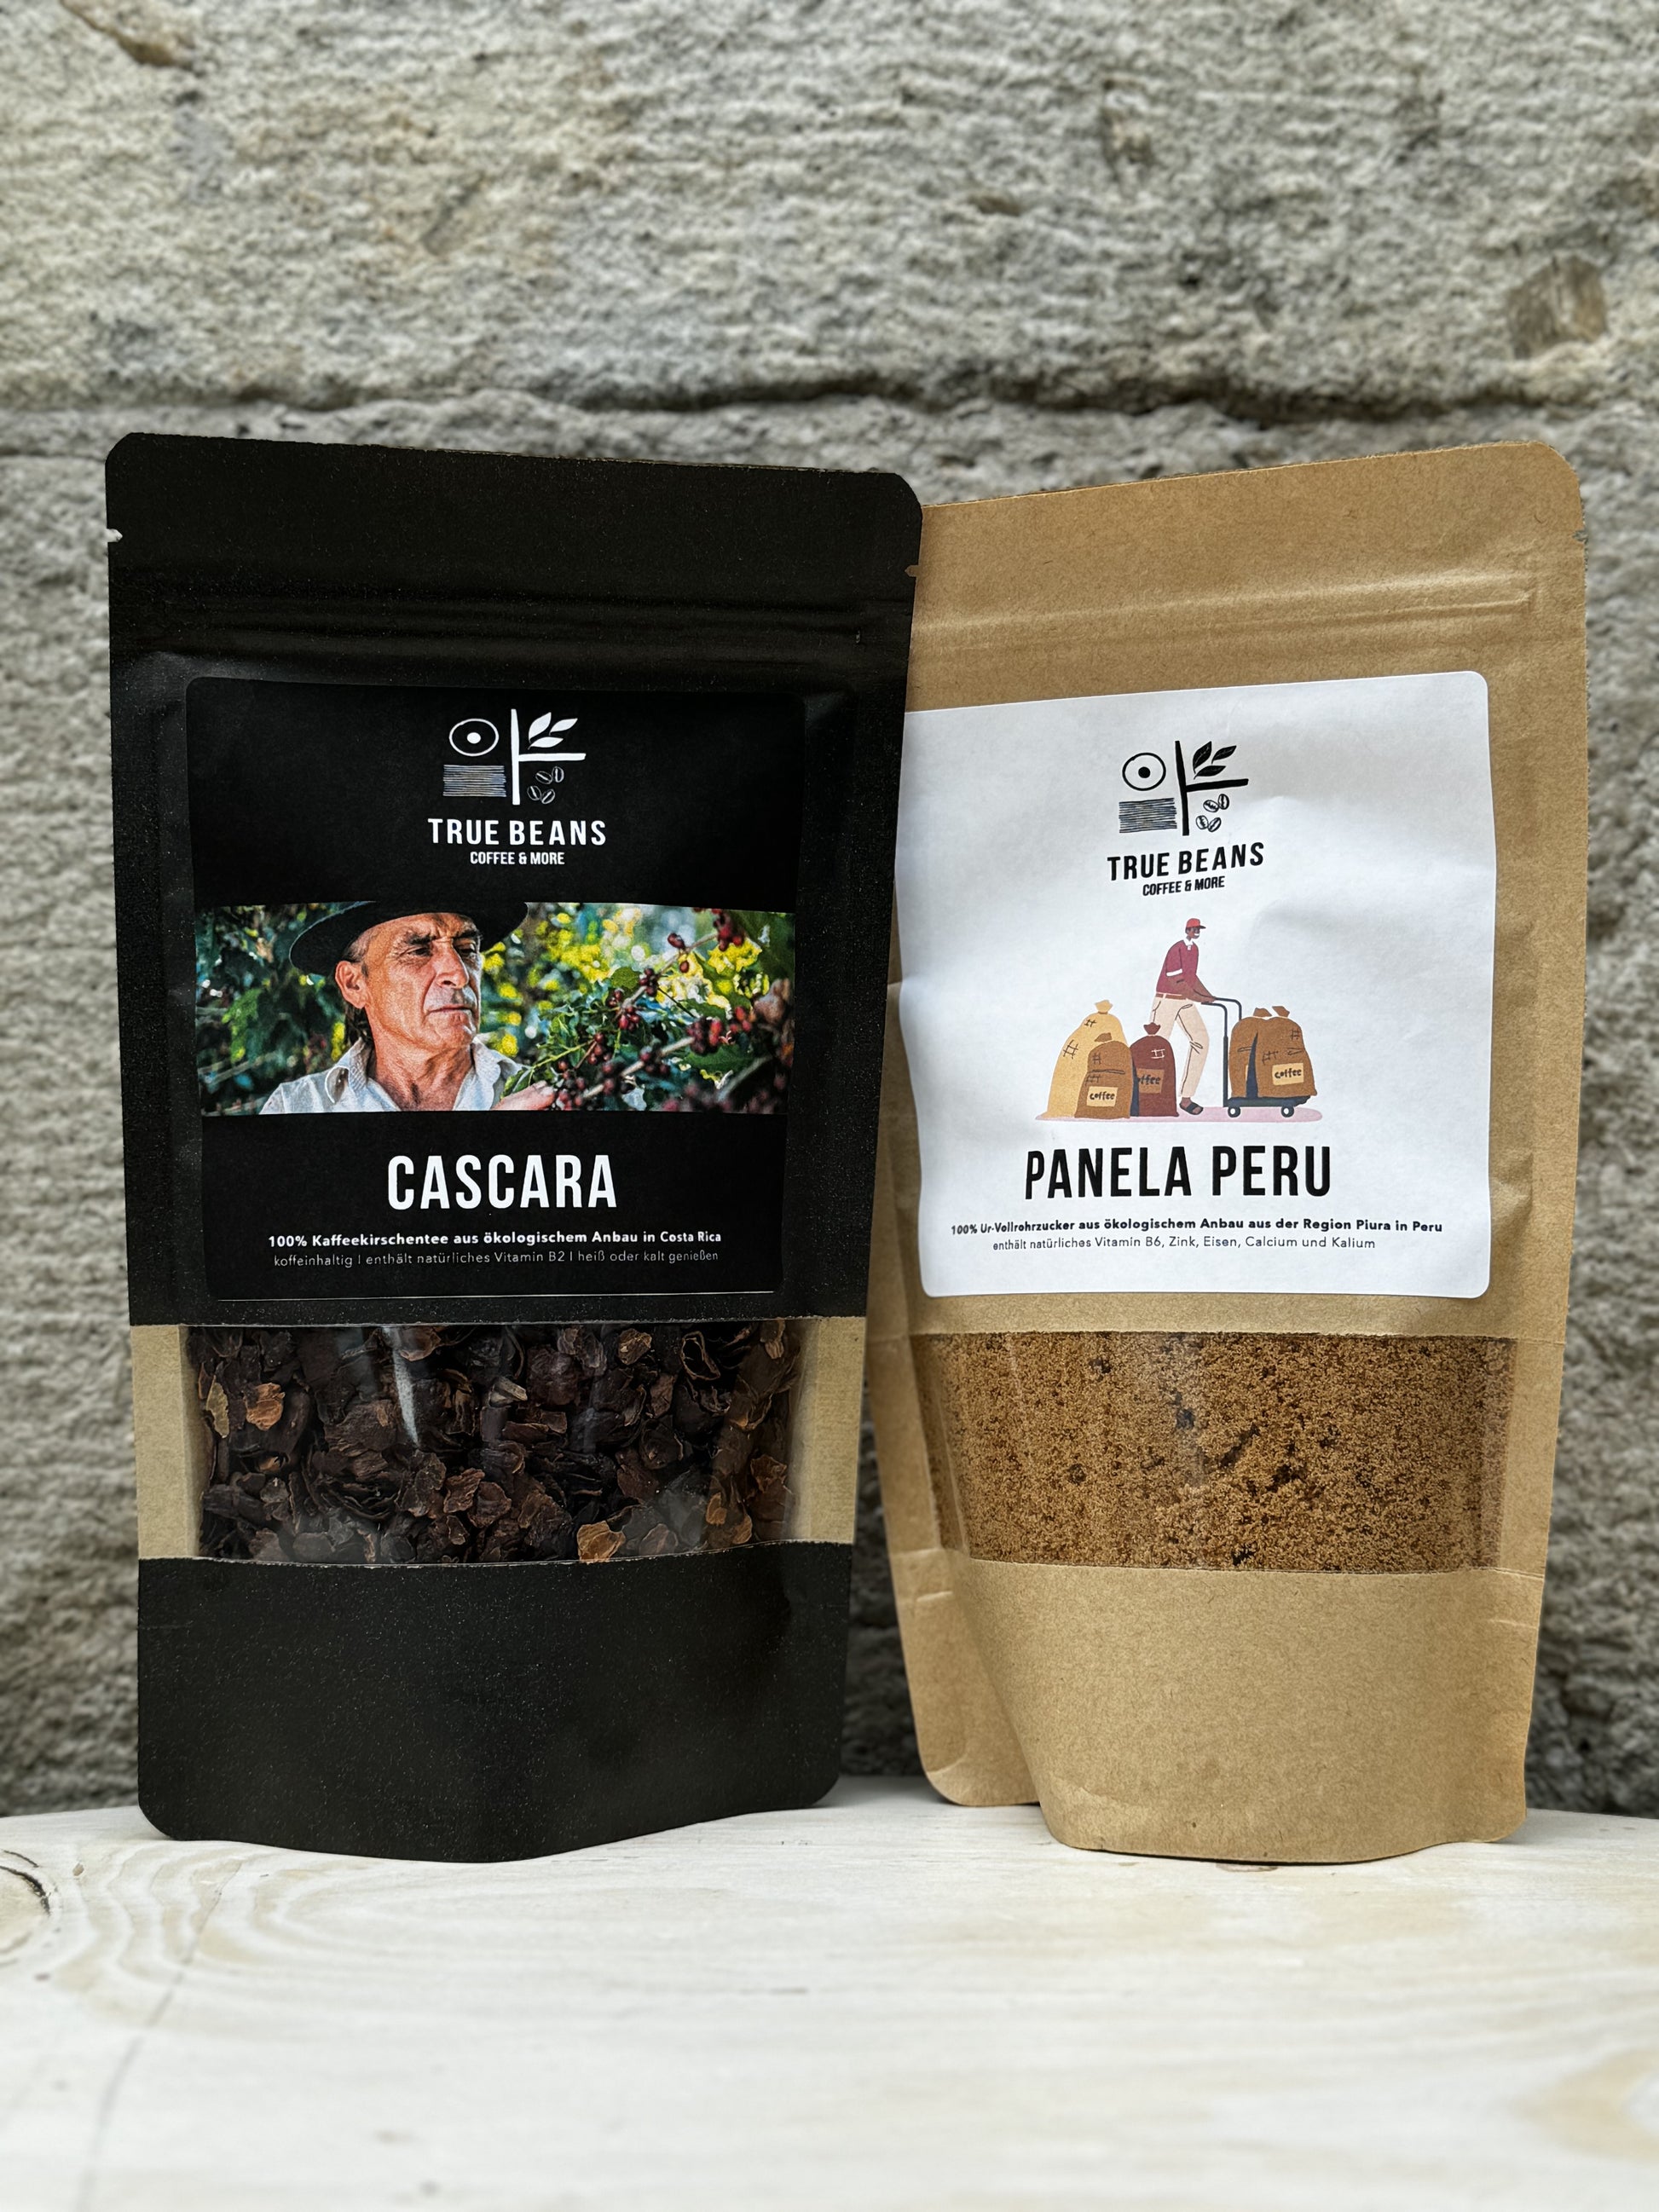 Zwei nachhaltige Produkte von True Beans: "Cascara" links und "Panela Peru" rechts, vor einem hellen Hintergrund auf einem Holztisch.